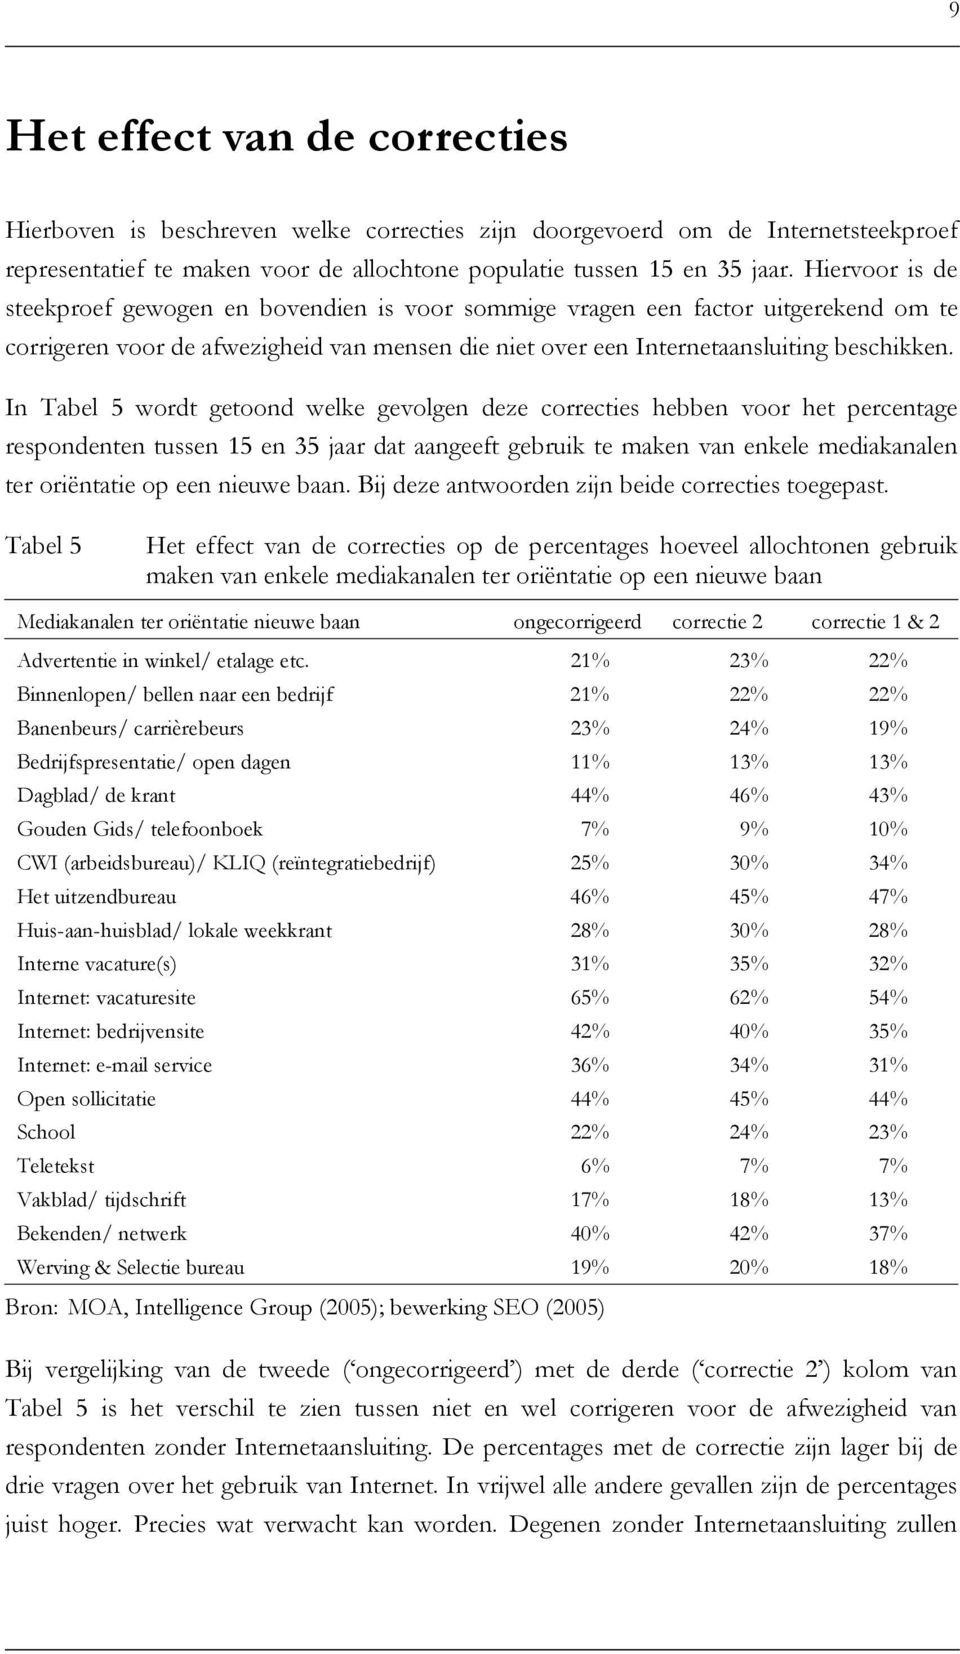 In Tabel 5 wordt getoond welke gevolgen deze correcties hebben voor het percentage respondenten tussen 15 en 35 jaar dat aangeeft gebruik te maken van enkele mediakanalen ter oriëntatie op een nieuwe